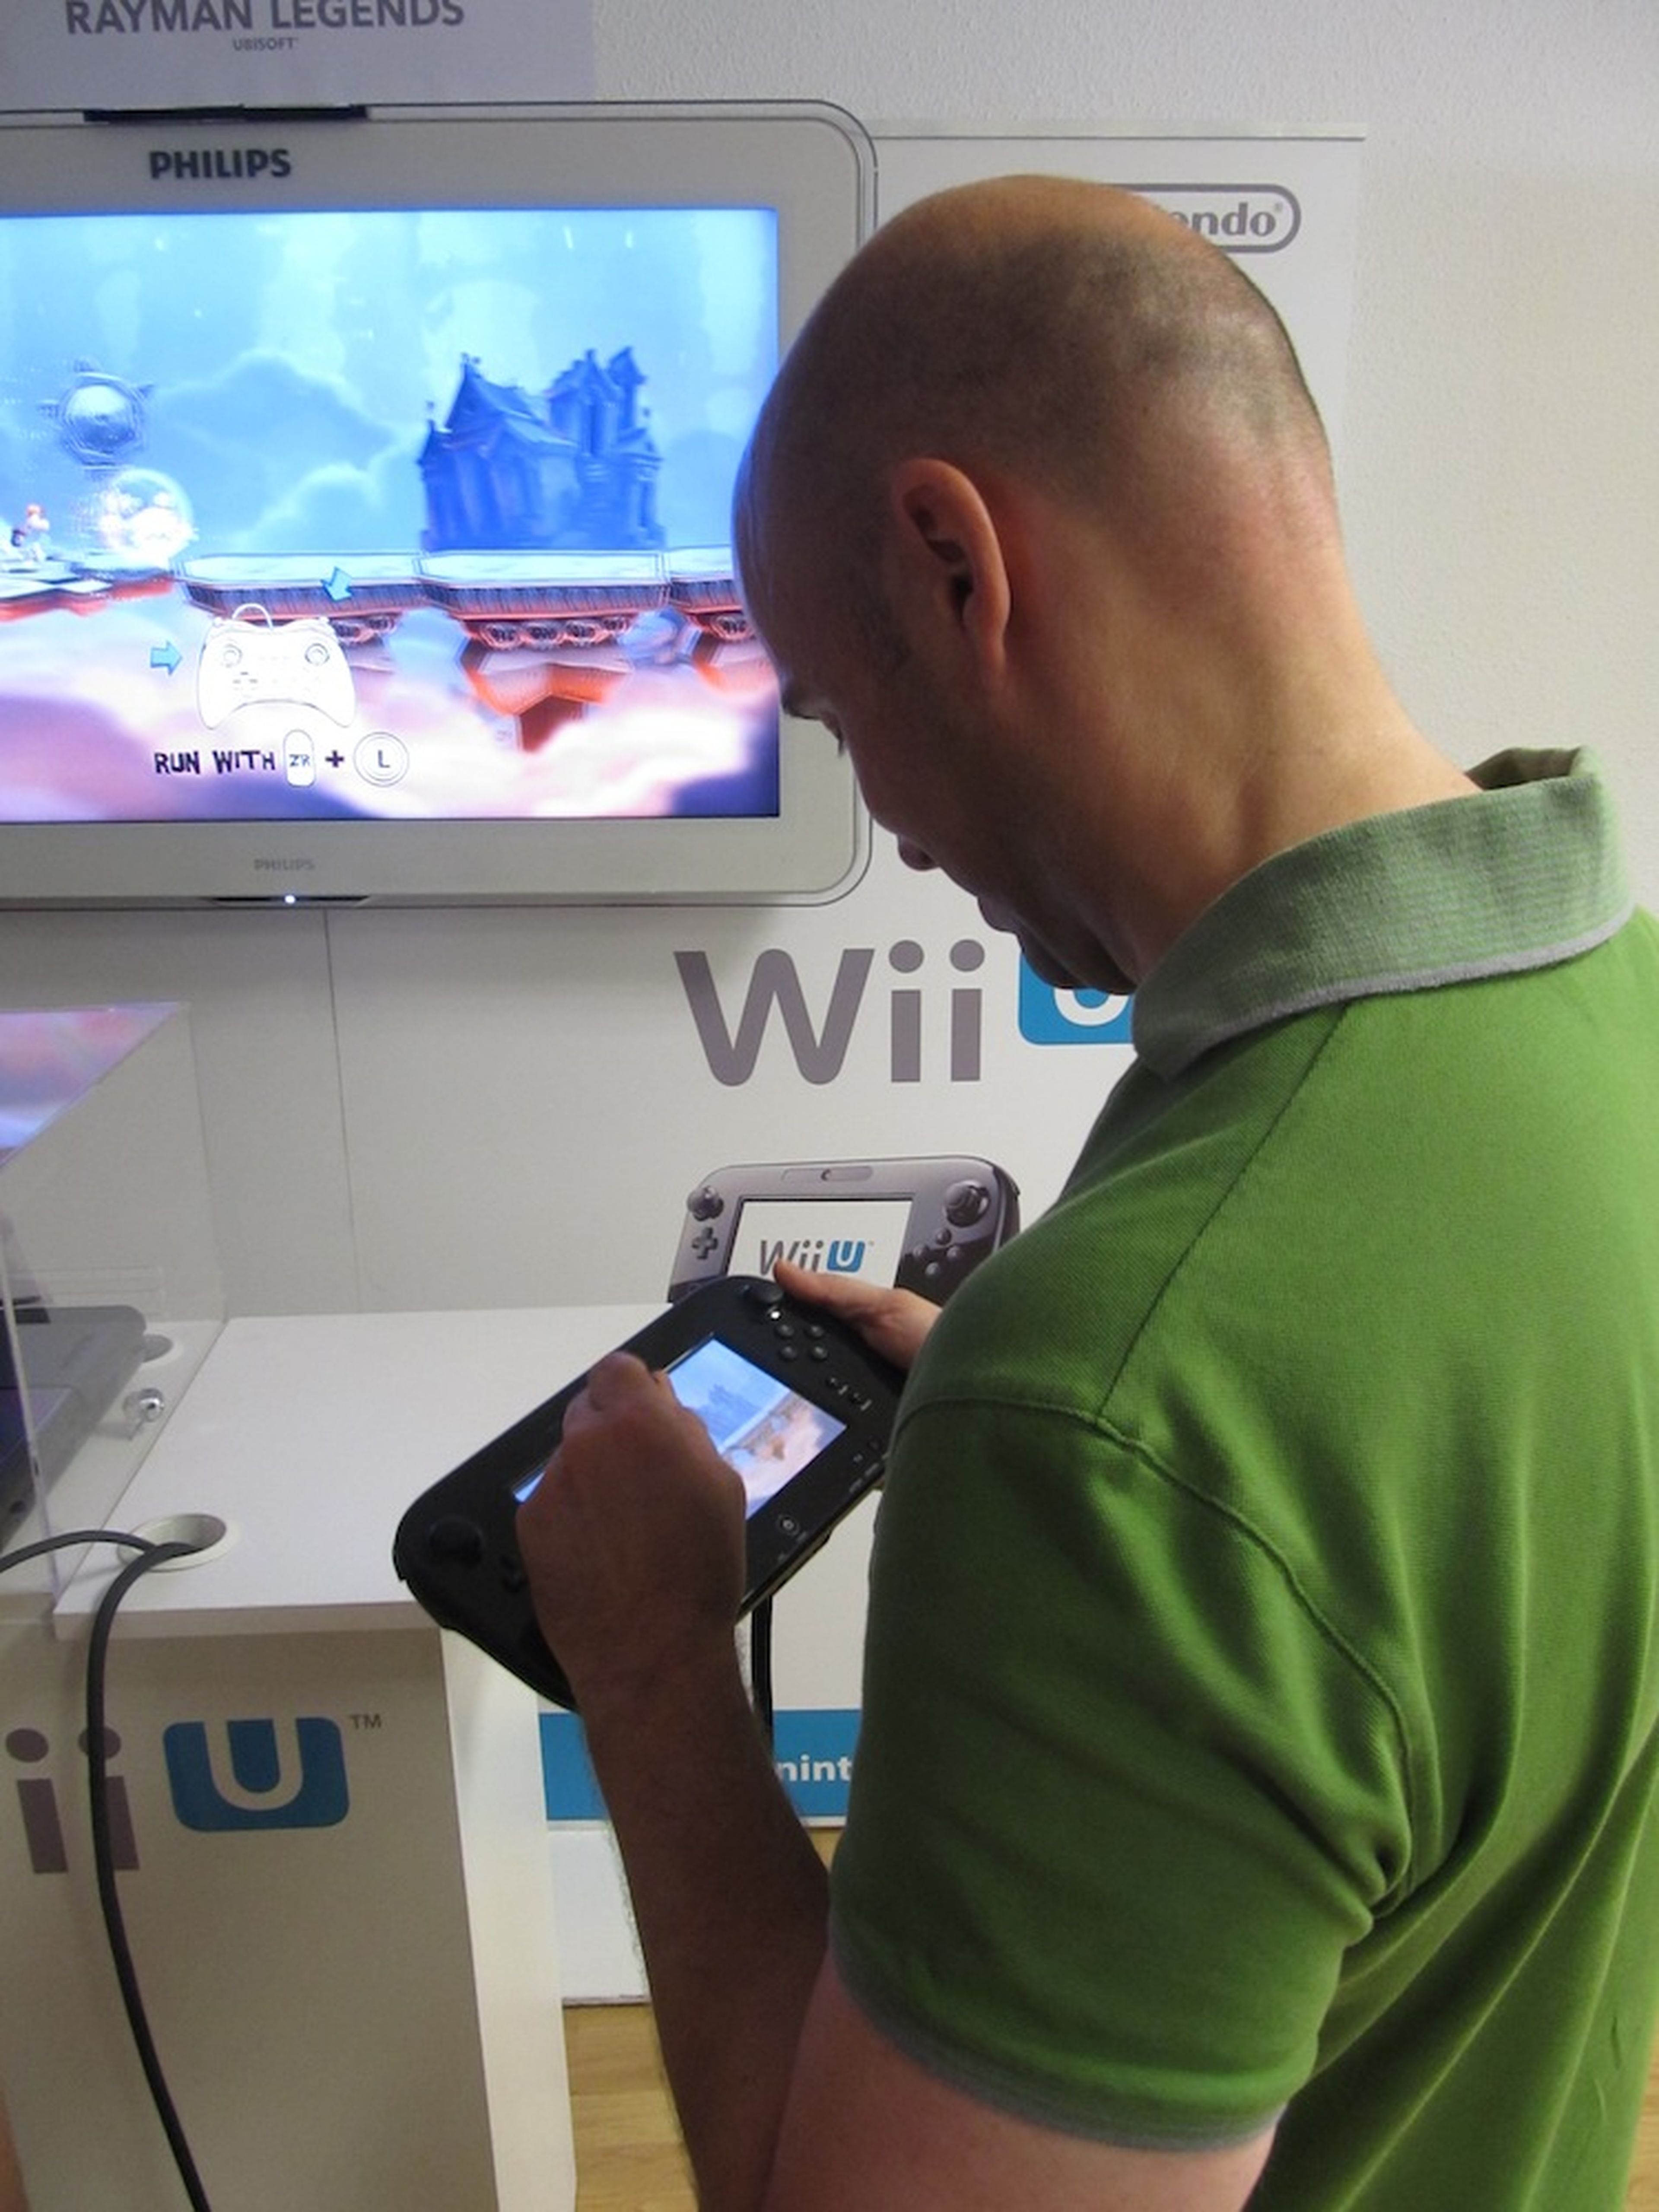 ¿Es Wii U una consola next-gen?